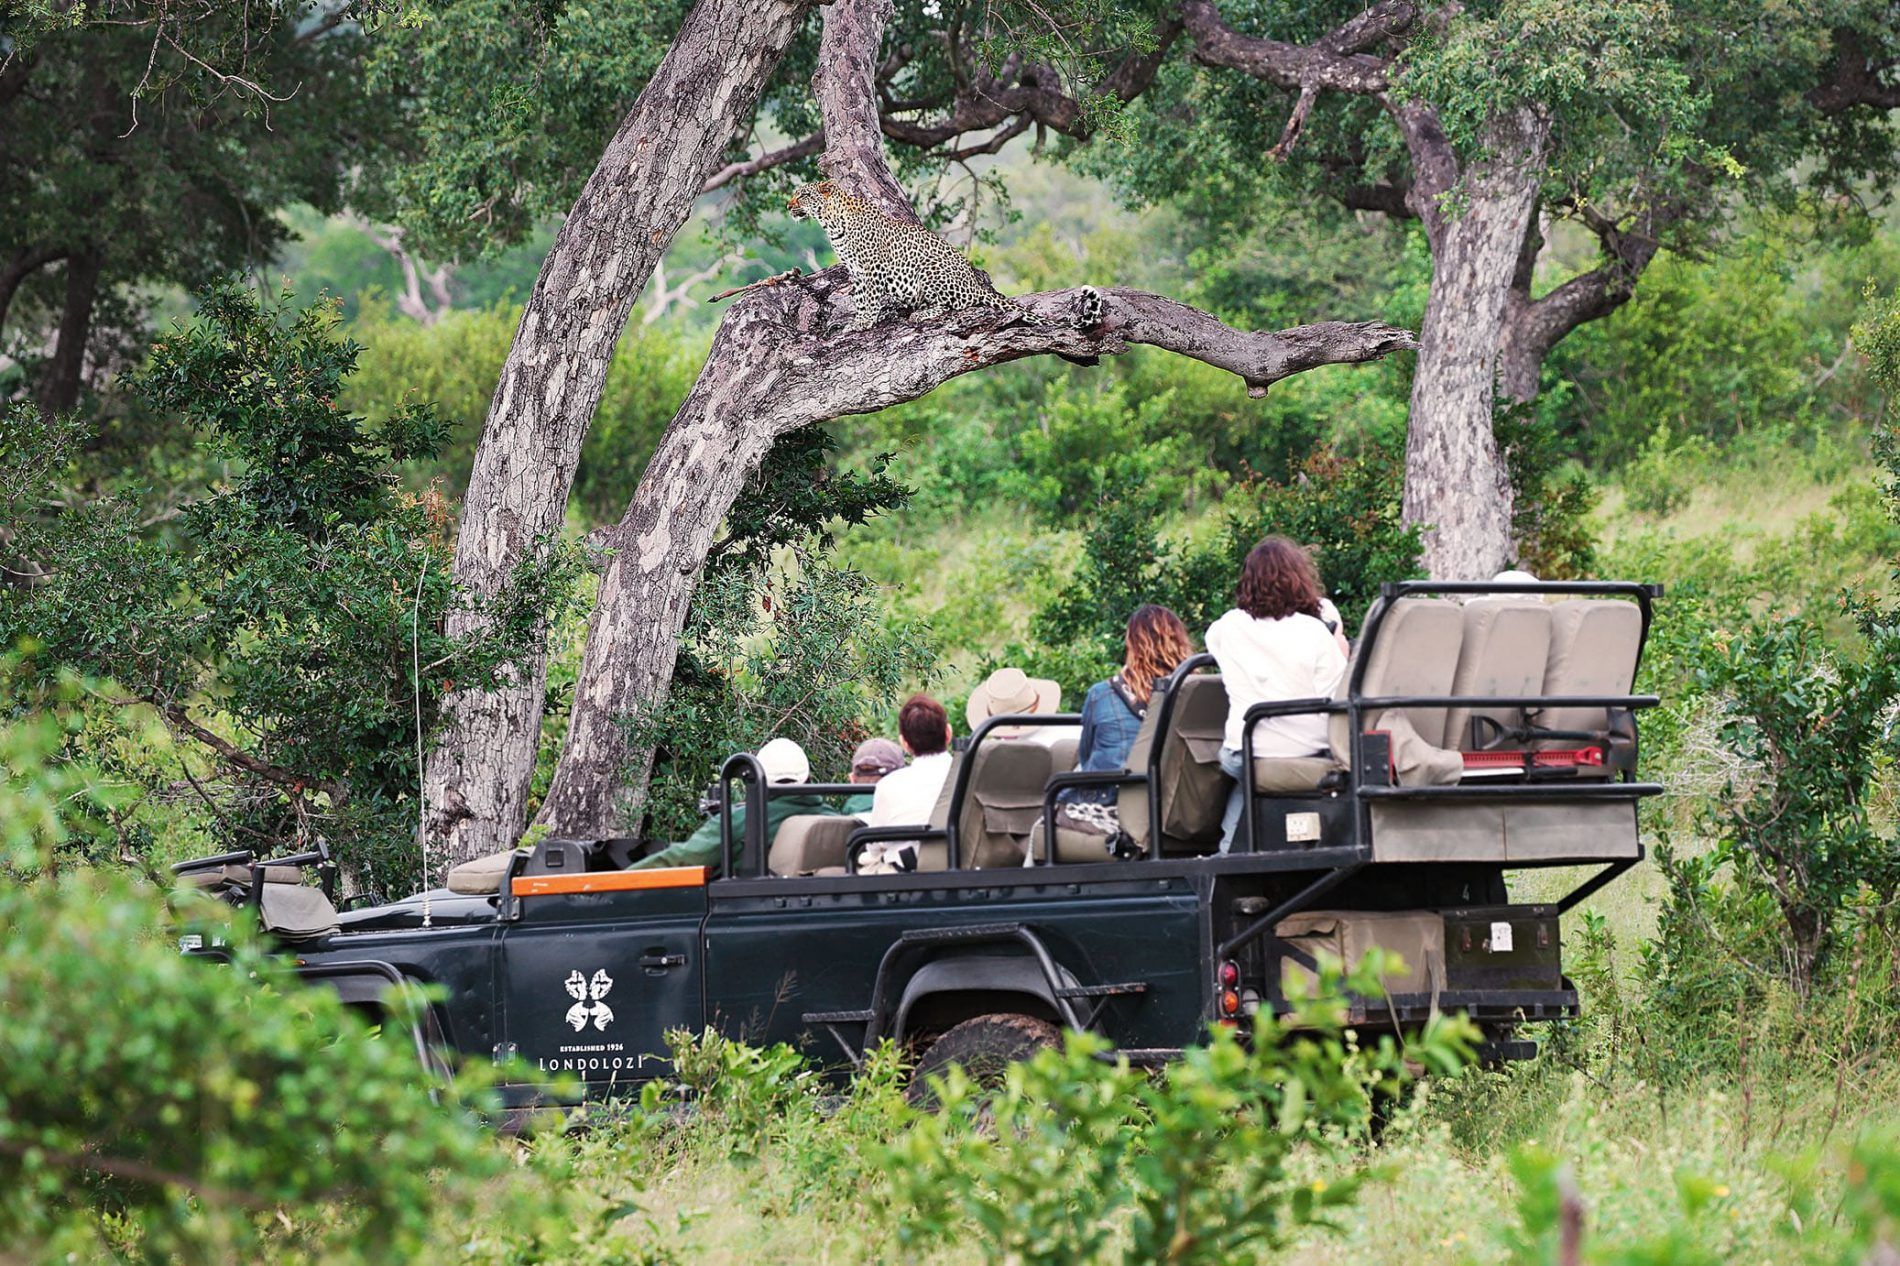 enjoy a safari with africa's leading safari company